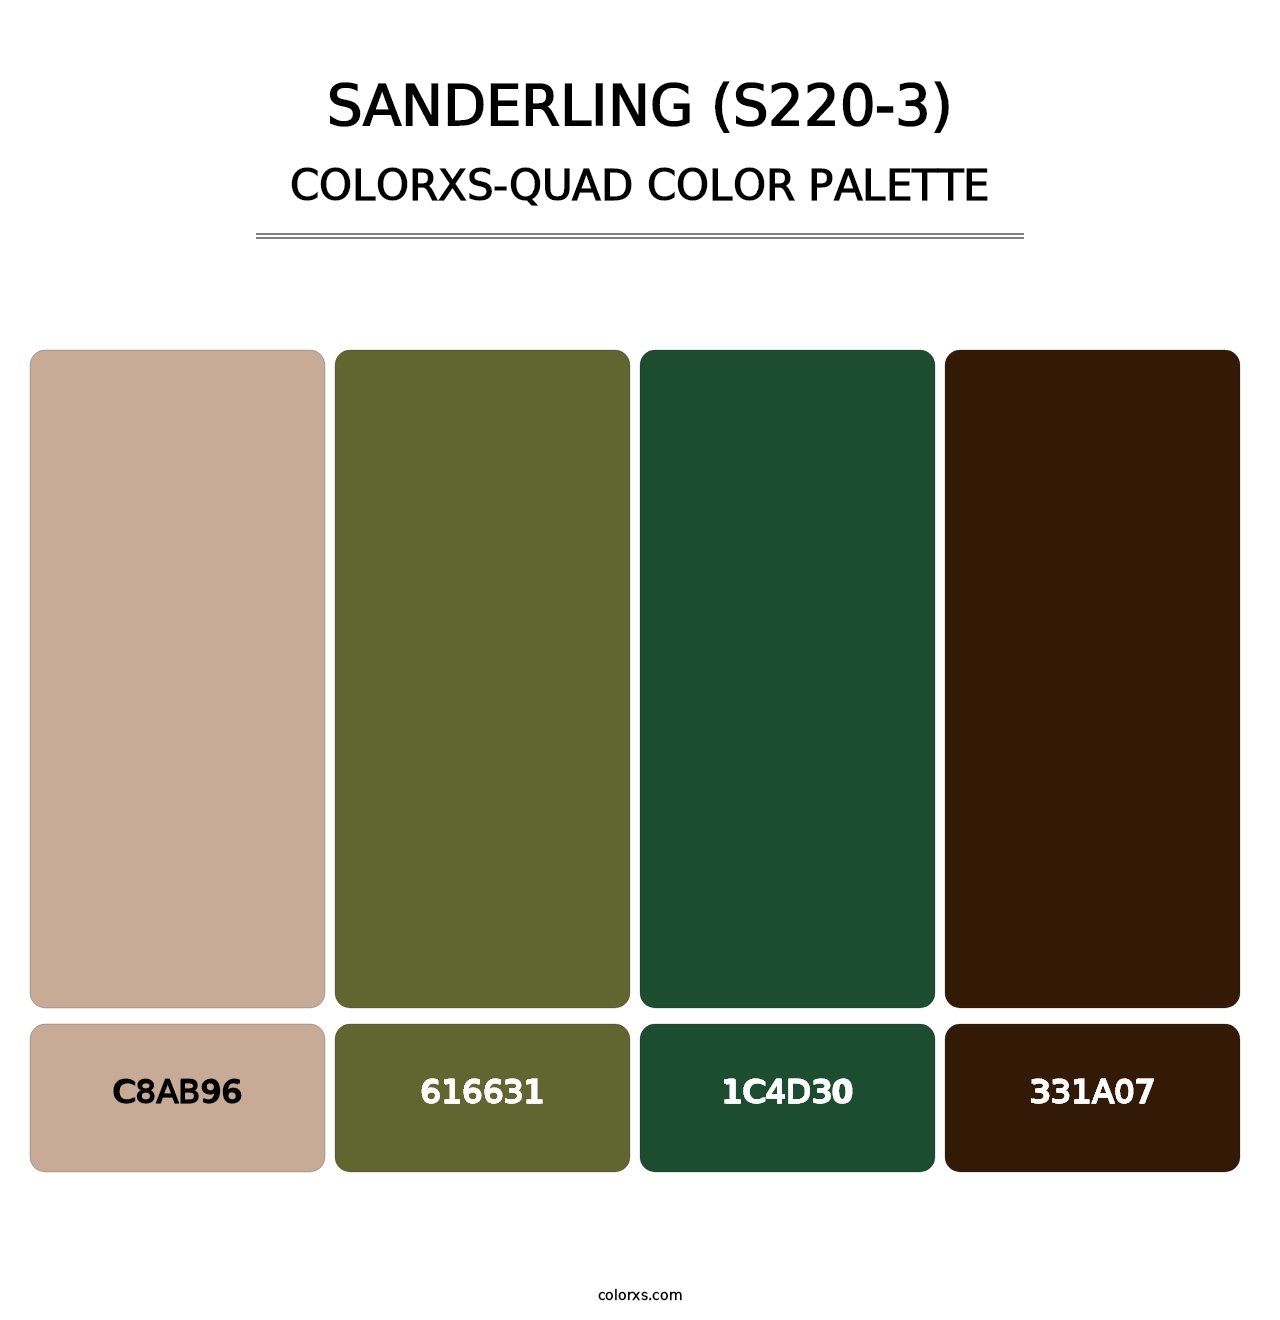 Sanderling (S220-3) - Colorxs Quad Palette